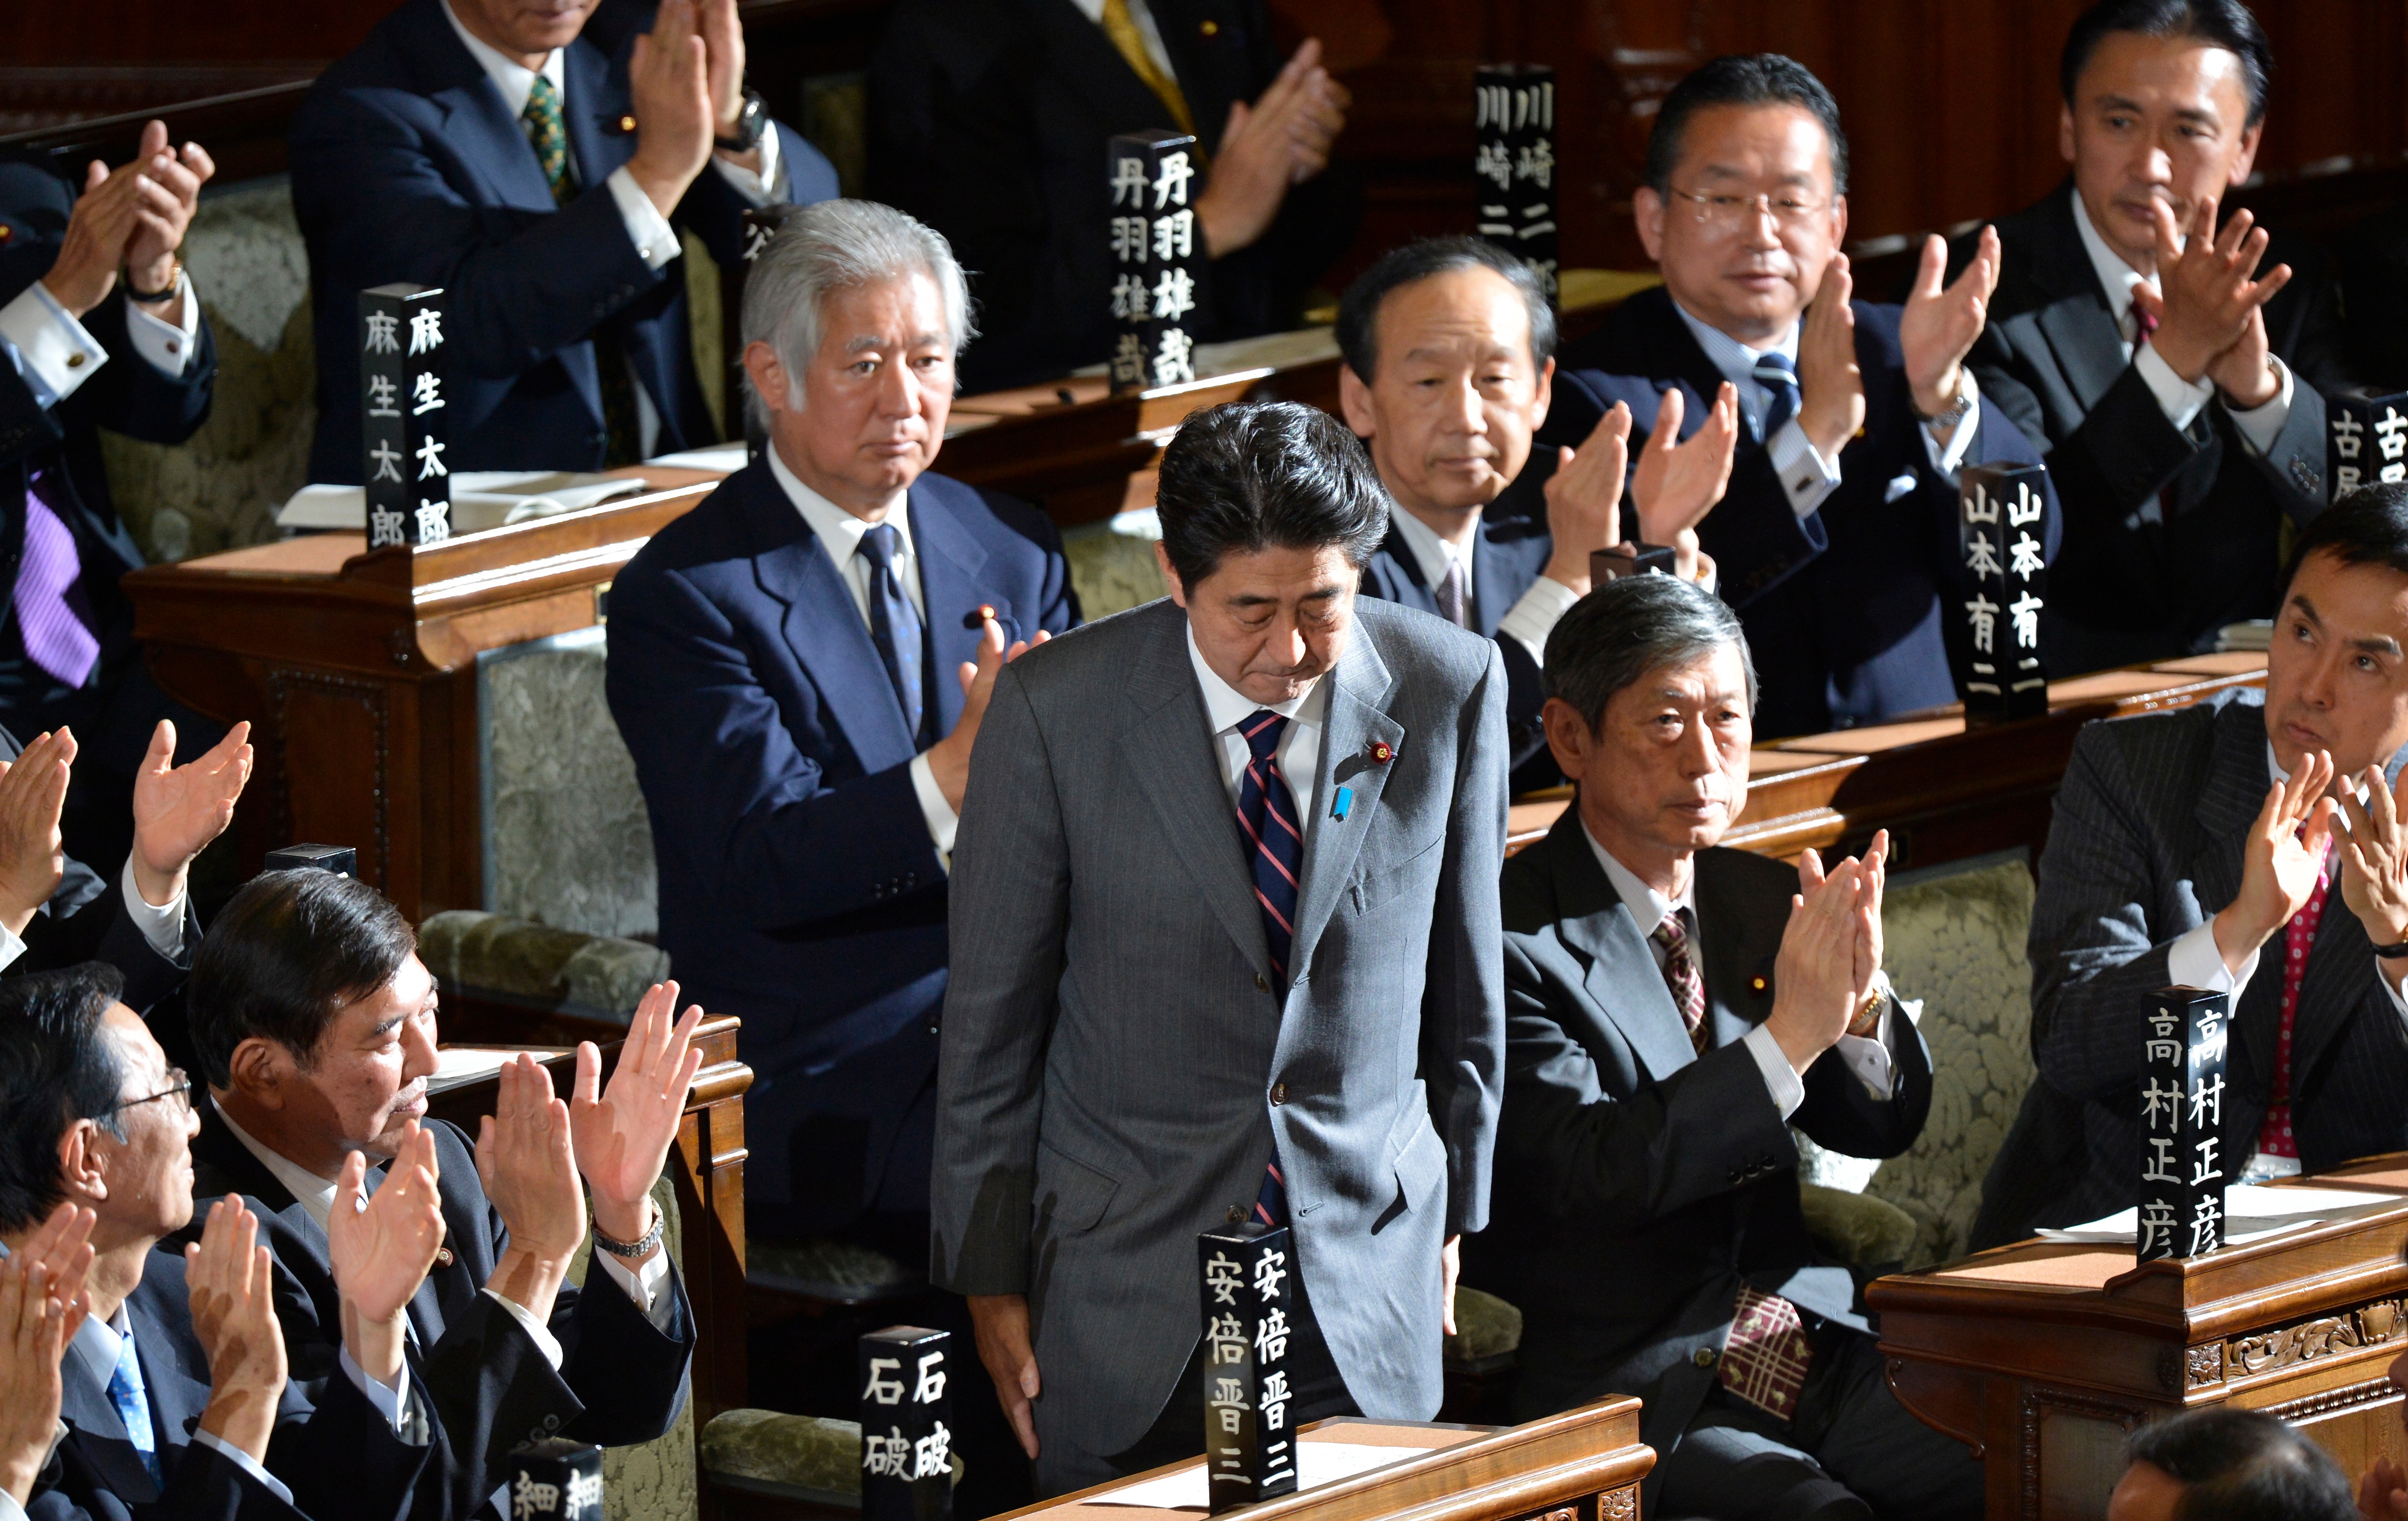 شينزو آبي ينحني بعد انتخابه رسميًا رئيس وزراء اليابان الجديد في عام 2012.